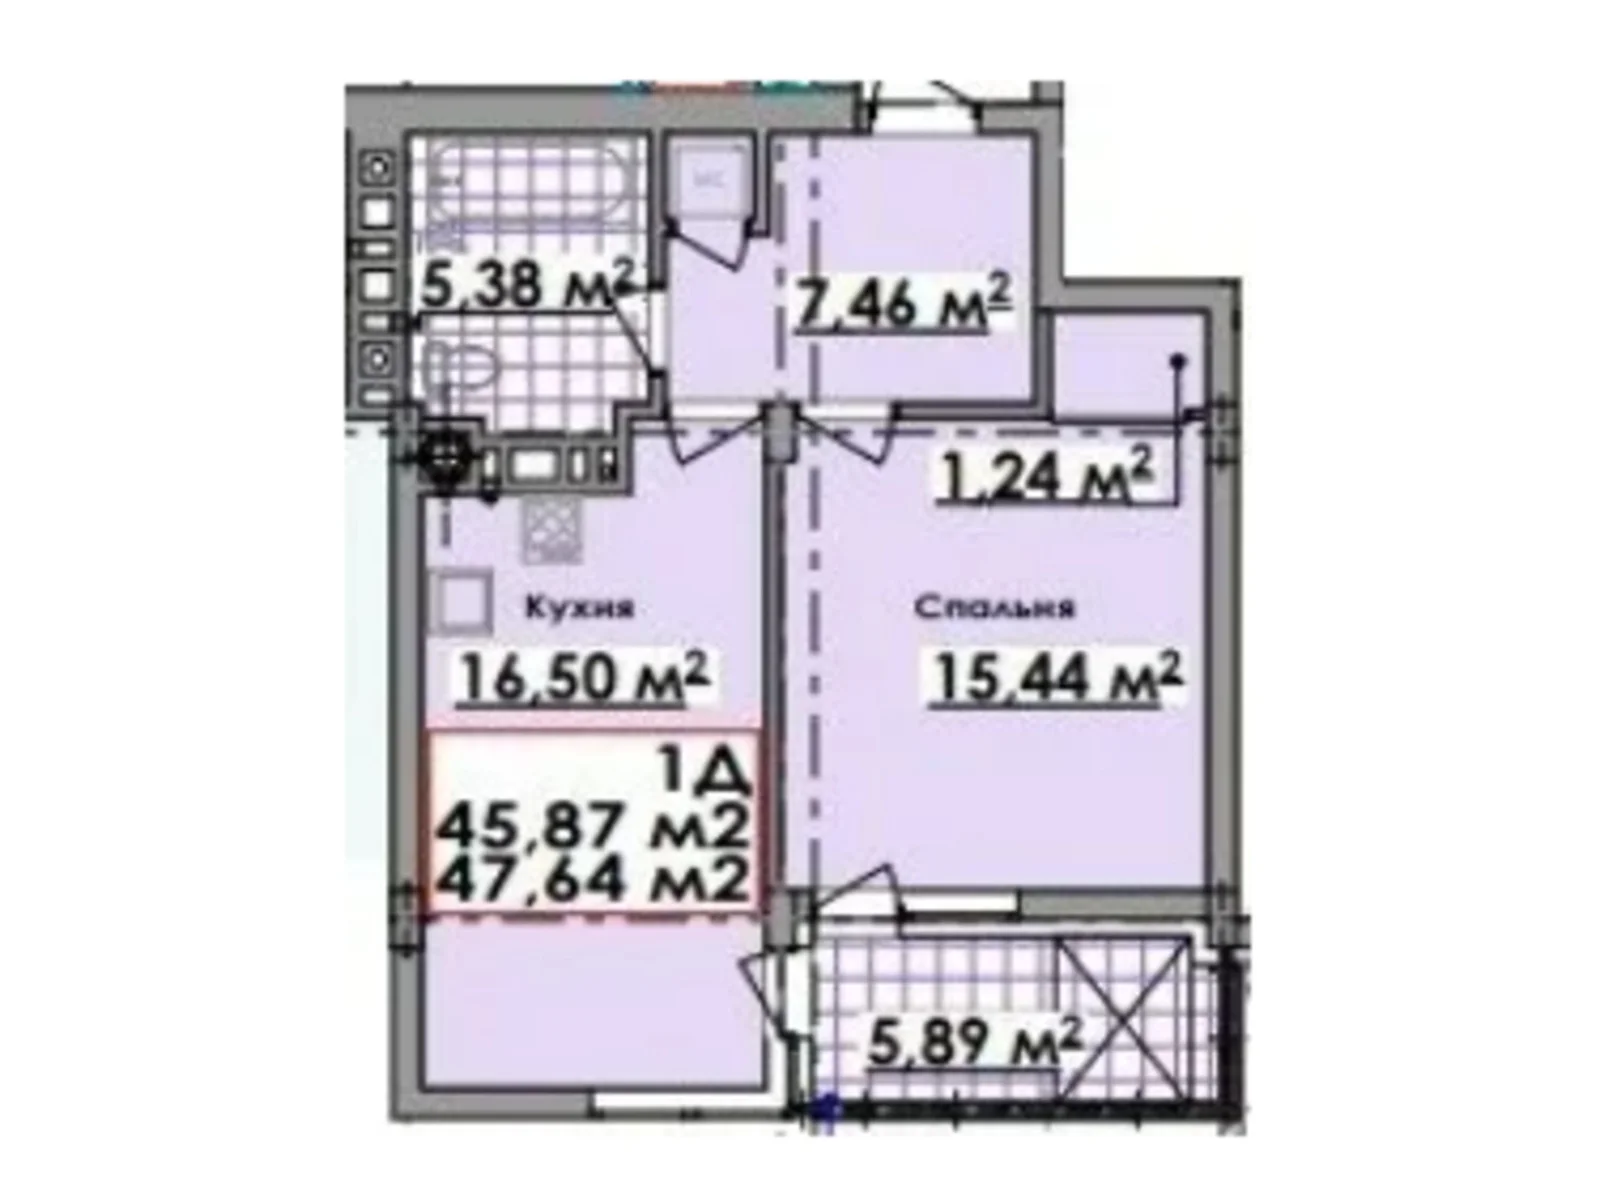 Продається 1-кімнатна квартира 47.64 кв. м у Підберізцях - фото 1